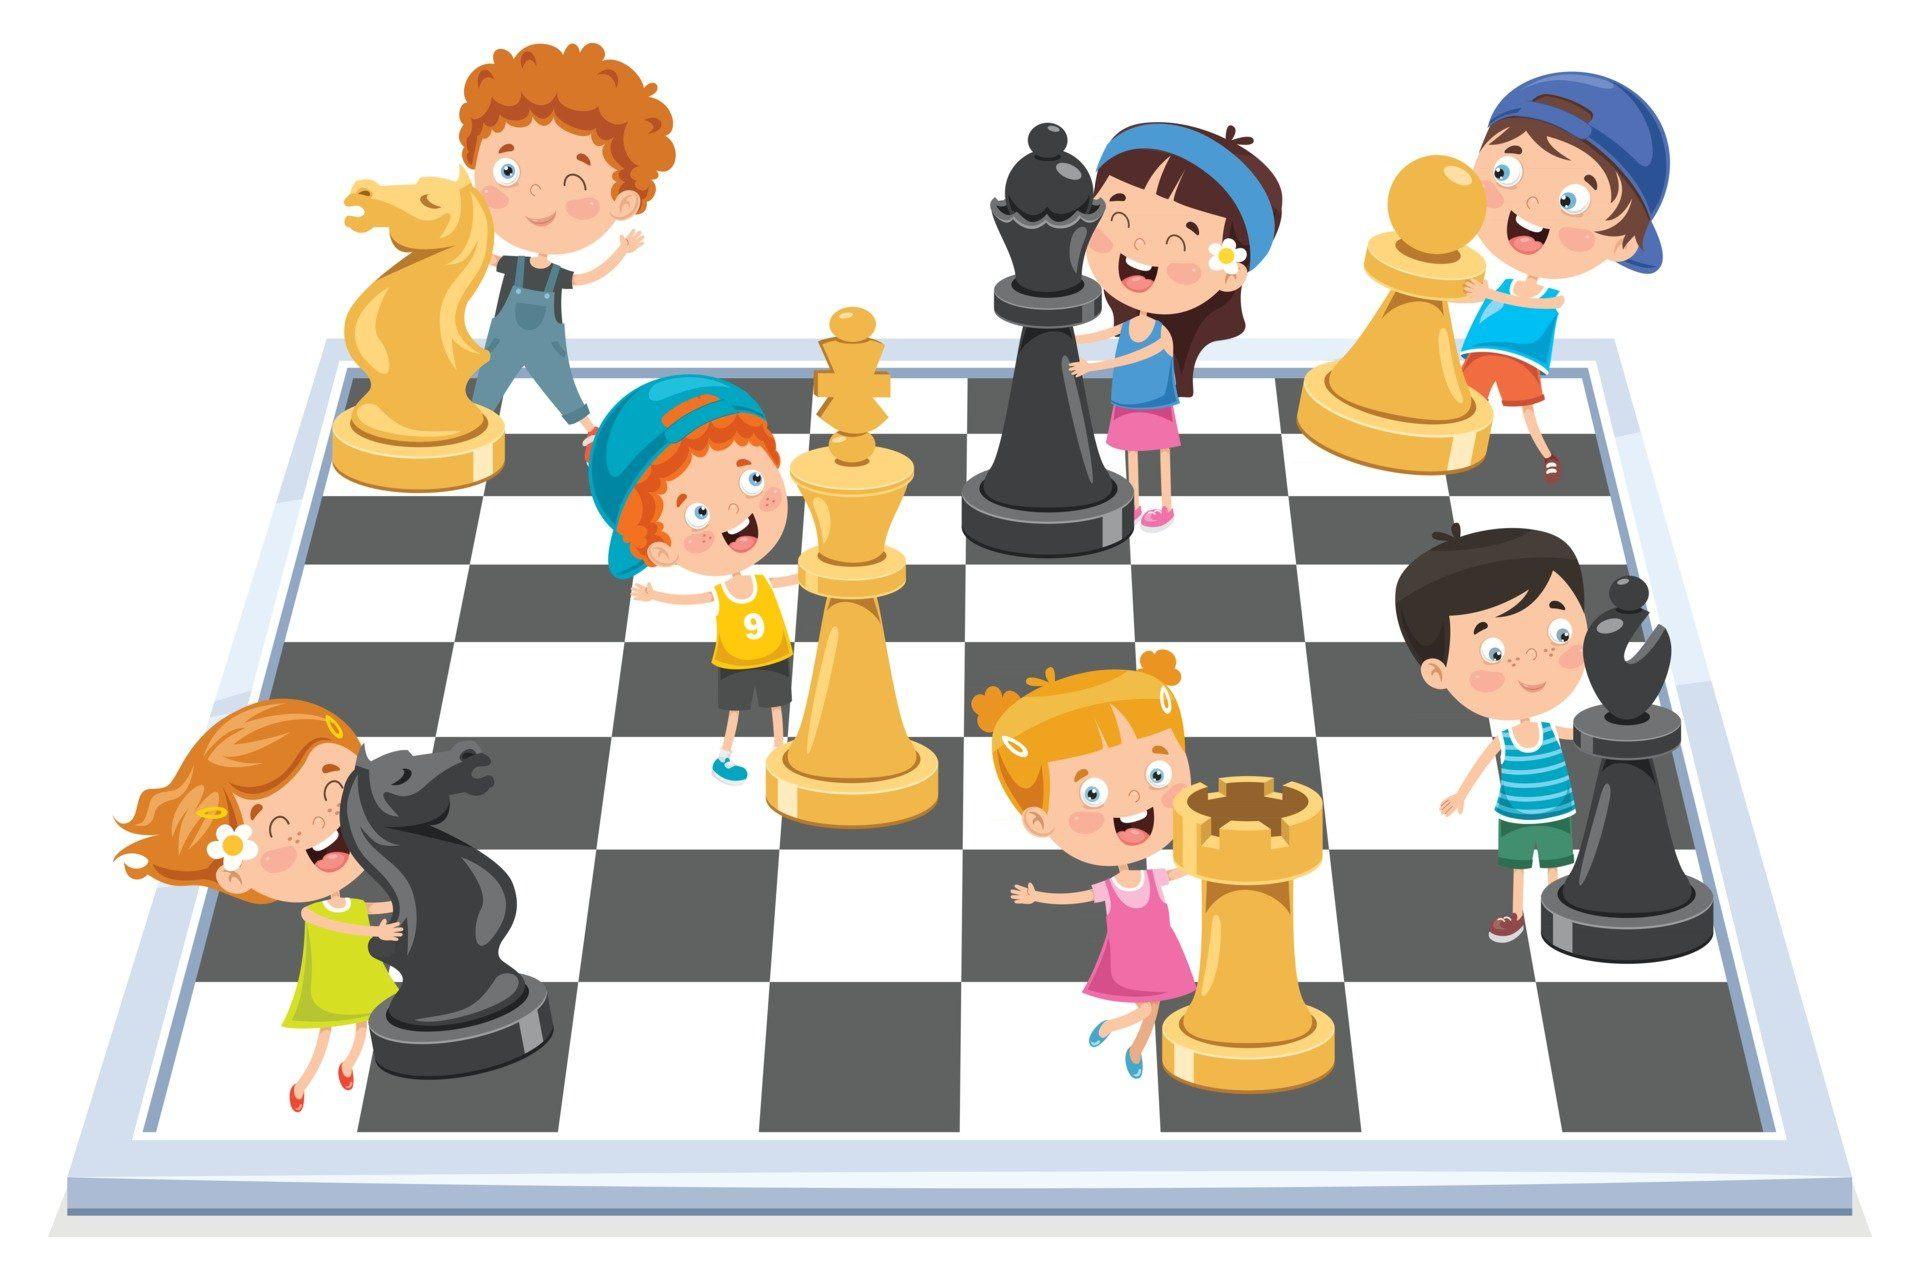 Районный шахматно-шашечный турнир